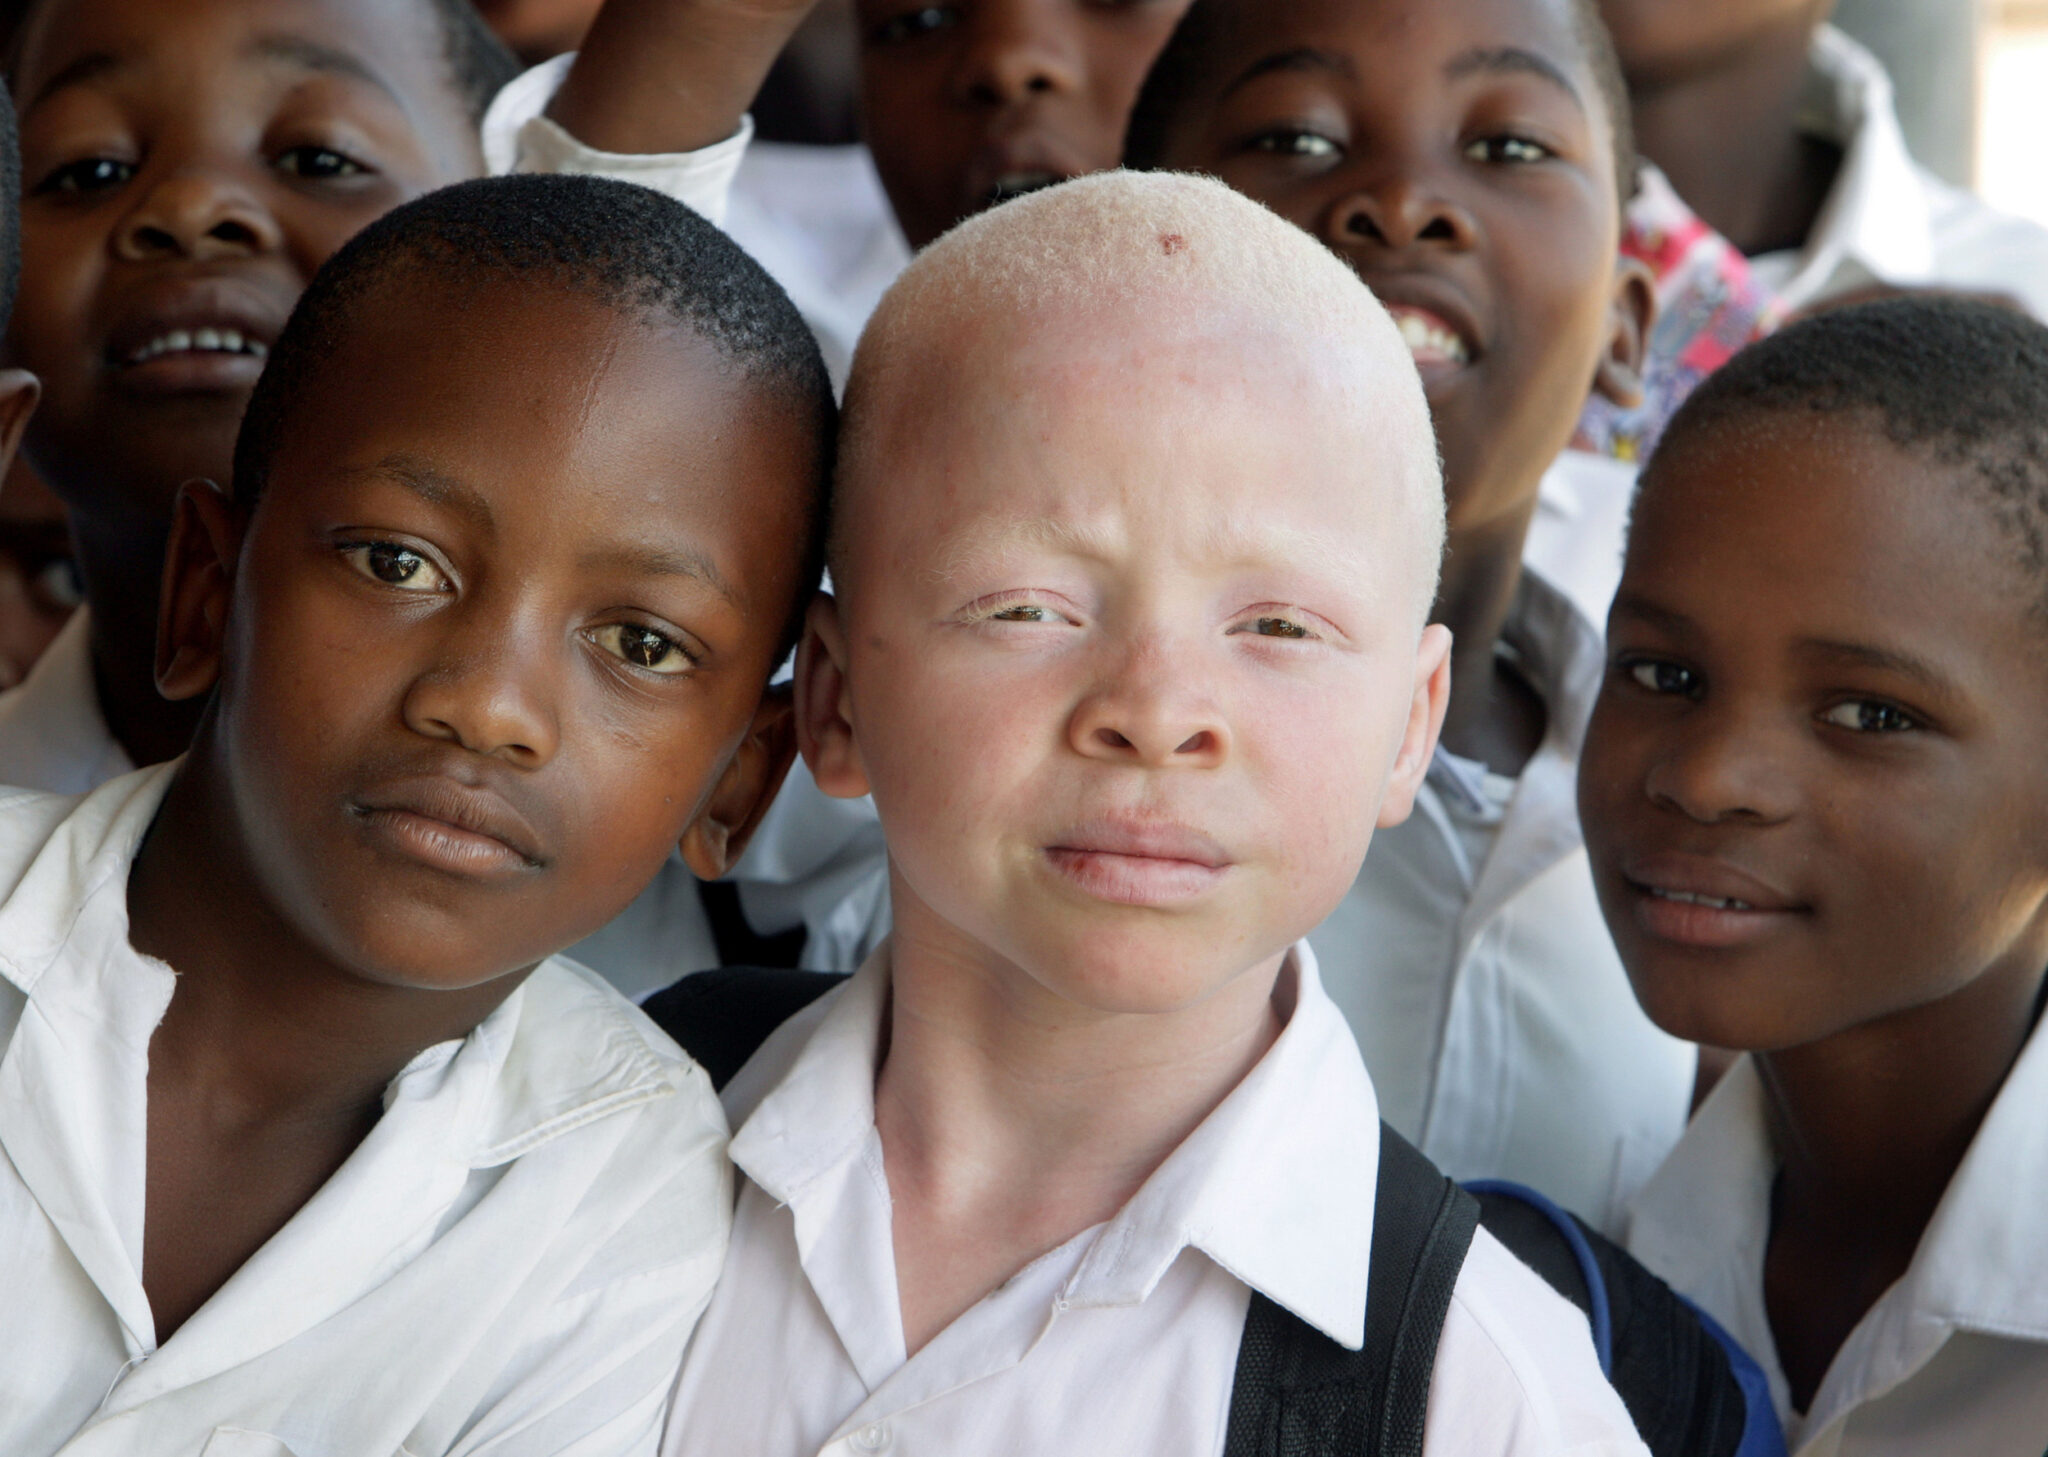 Чернокожий африканец. Альбинос негроидной расы. Люди разных рас.